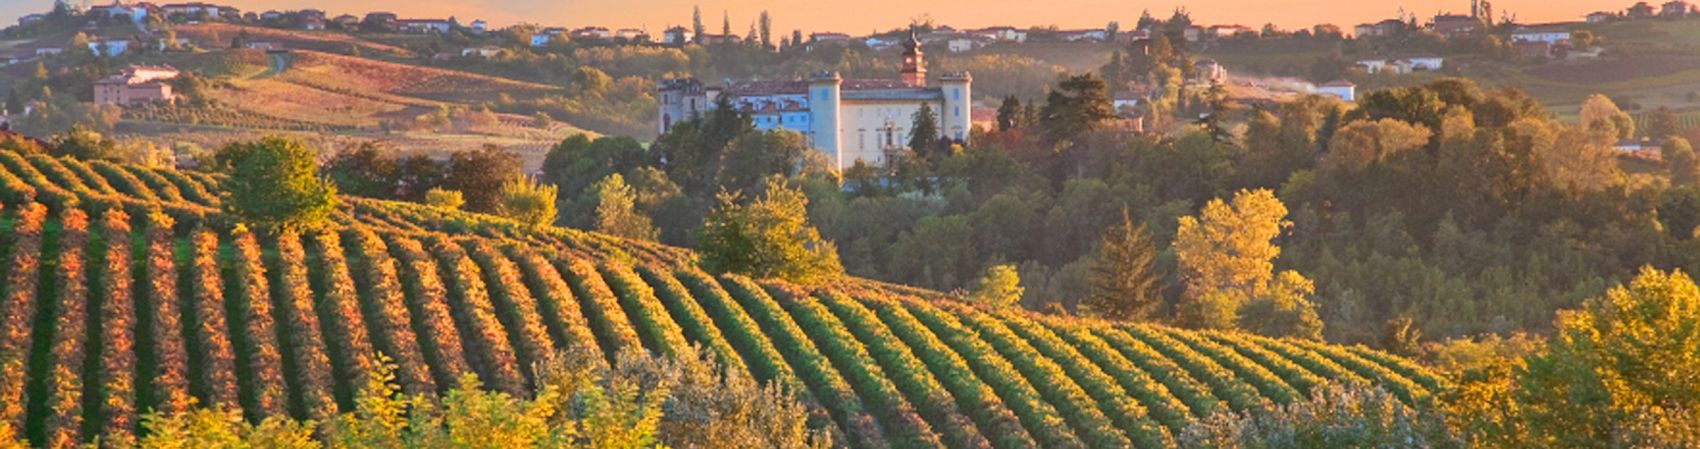 Melhores vinícolas de Chianti na Toscana